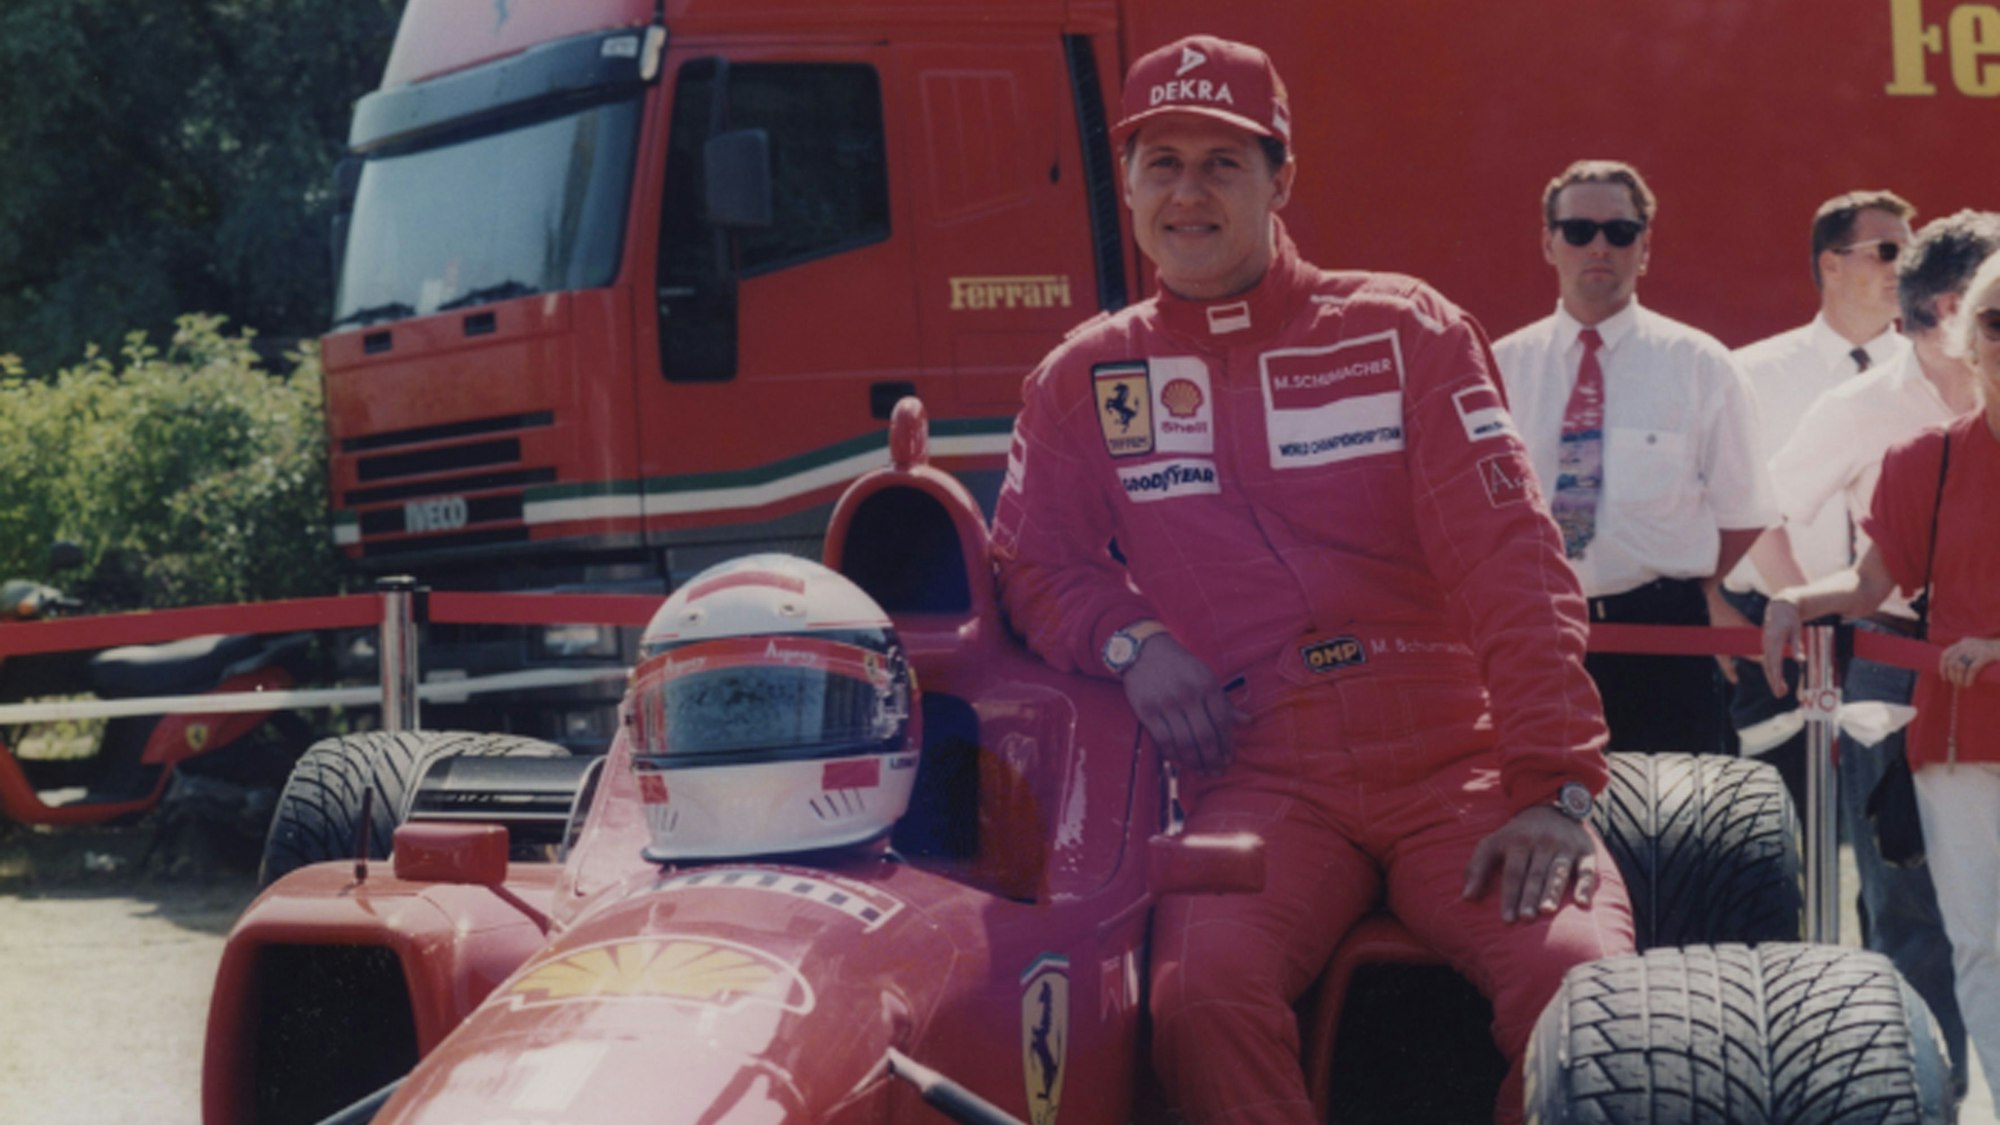 Zu sehen ist Rennfahrer Michael Schumacher, der sich an einen Ferrari lehnt.